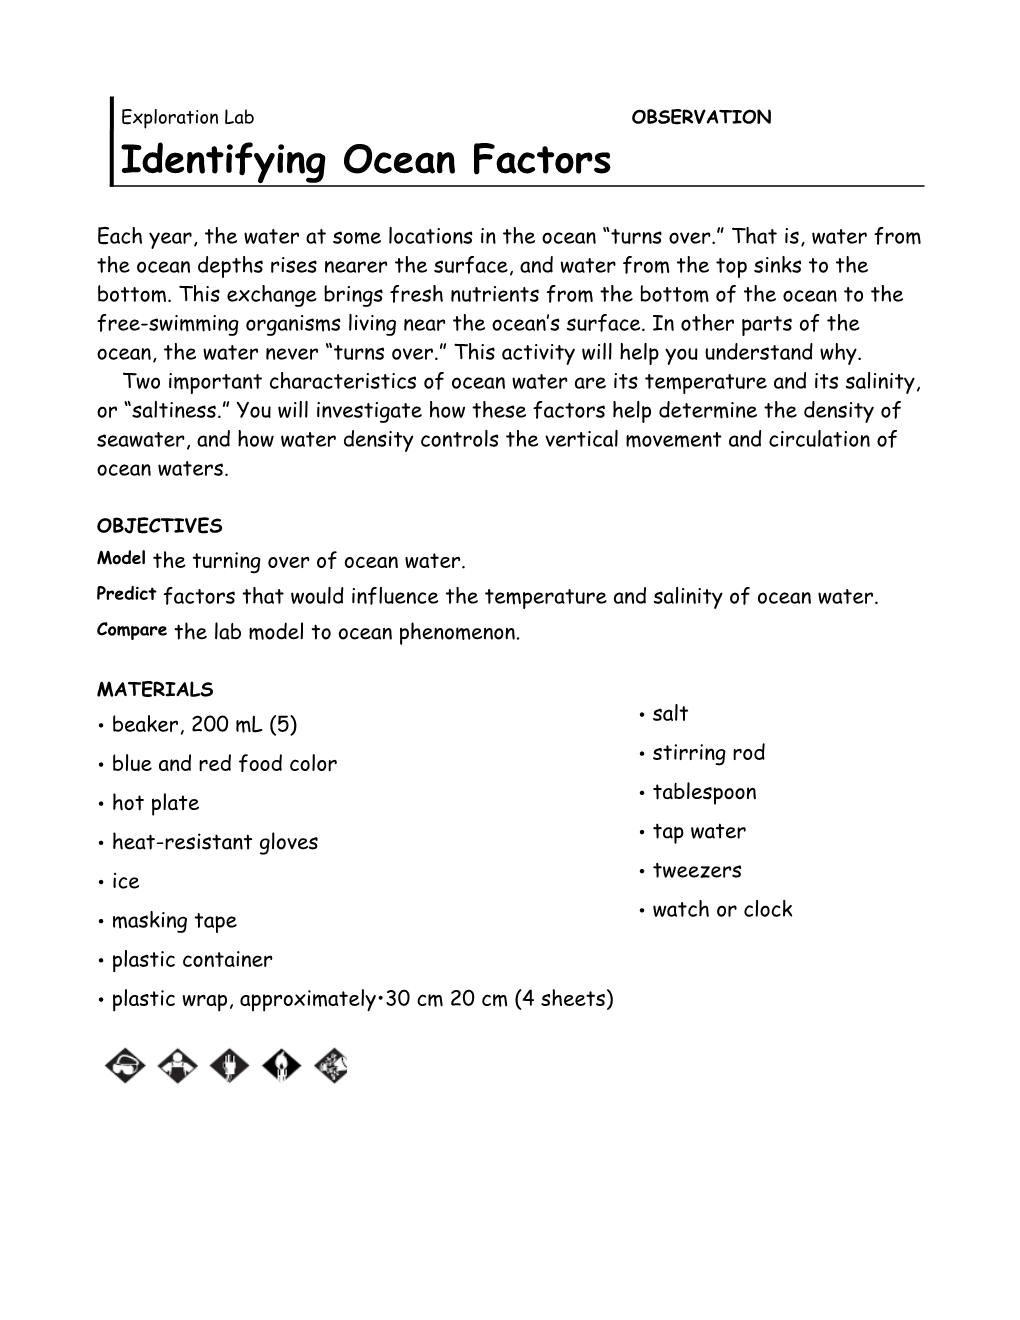 Identifying Ocean Factors